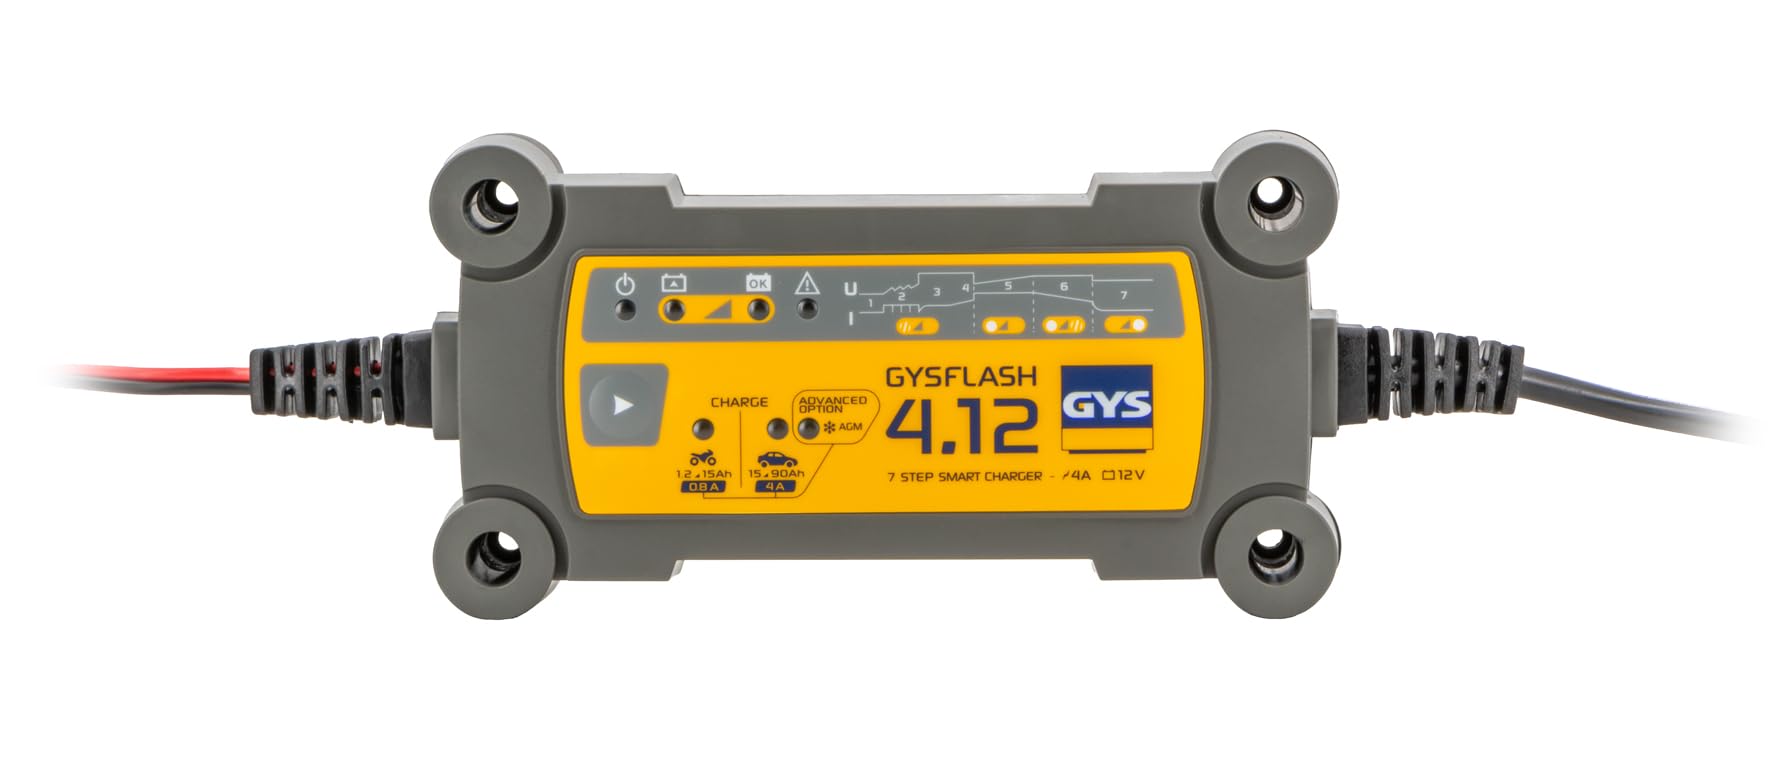 GYS Ladegerät Batterieladegerät für das Laden von 12V-Batterien von Kleinwagen, Motorrädern, Jet-Skis, Kart-Sport-Fahrzeugen und Rasenmähern, GYSFLASH 4.12 von GYS